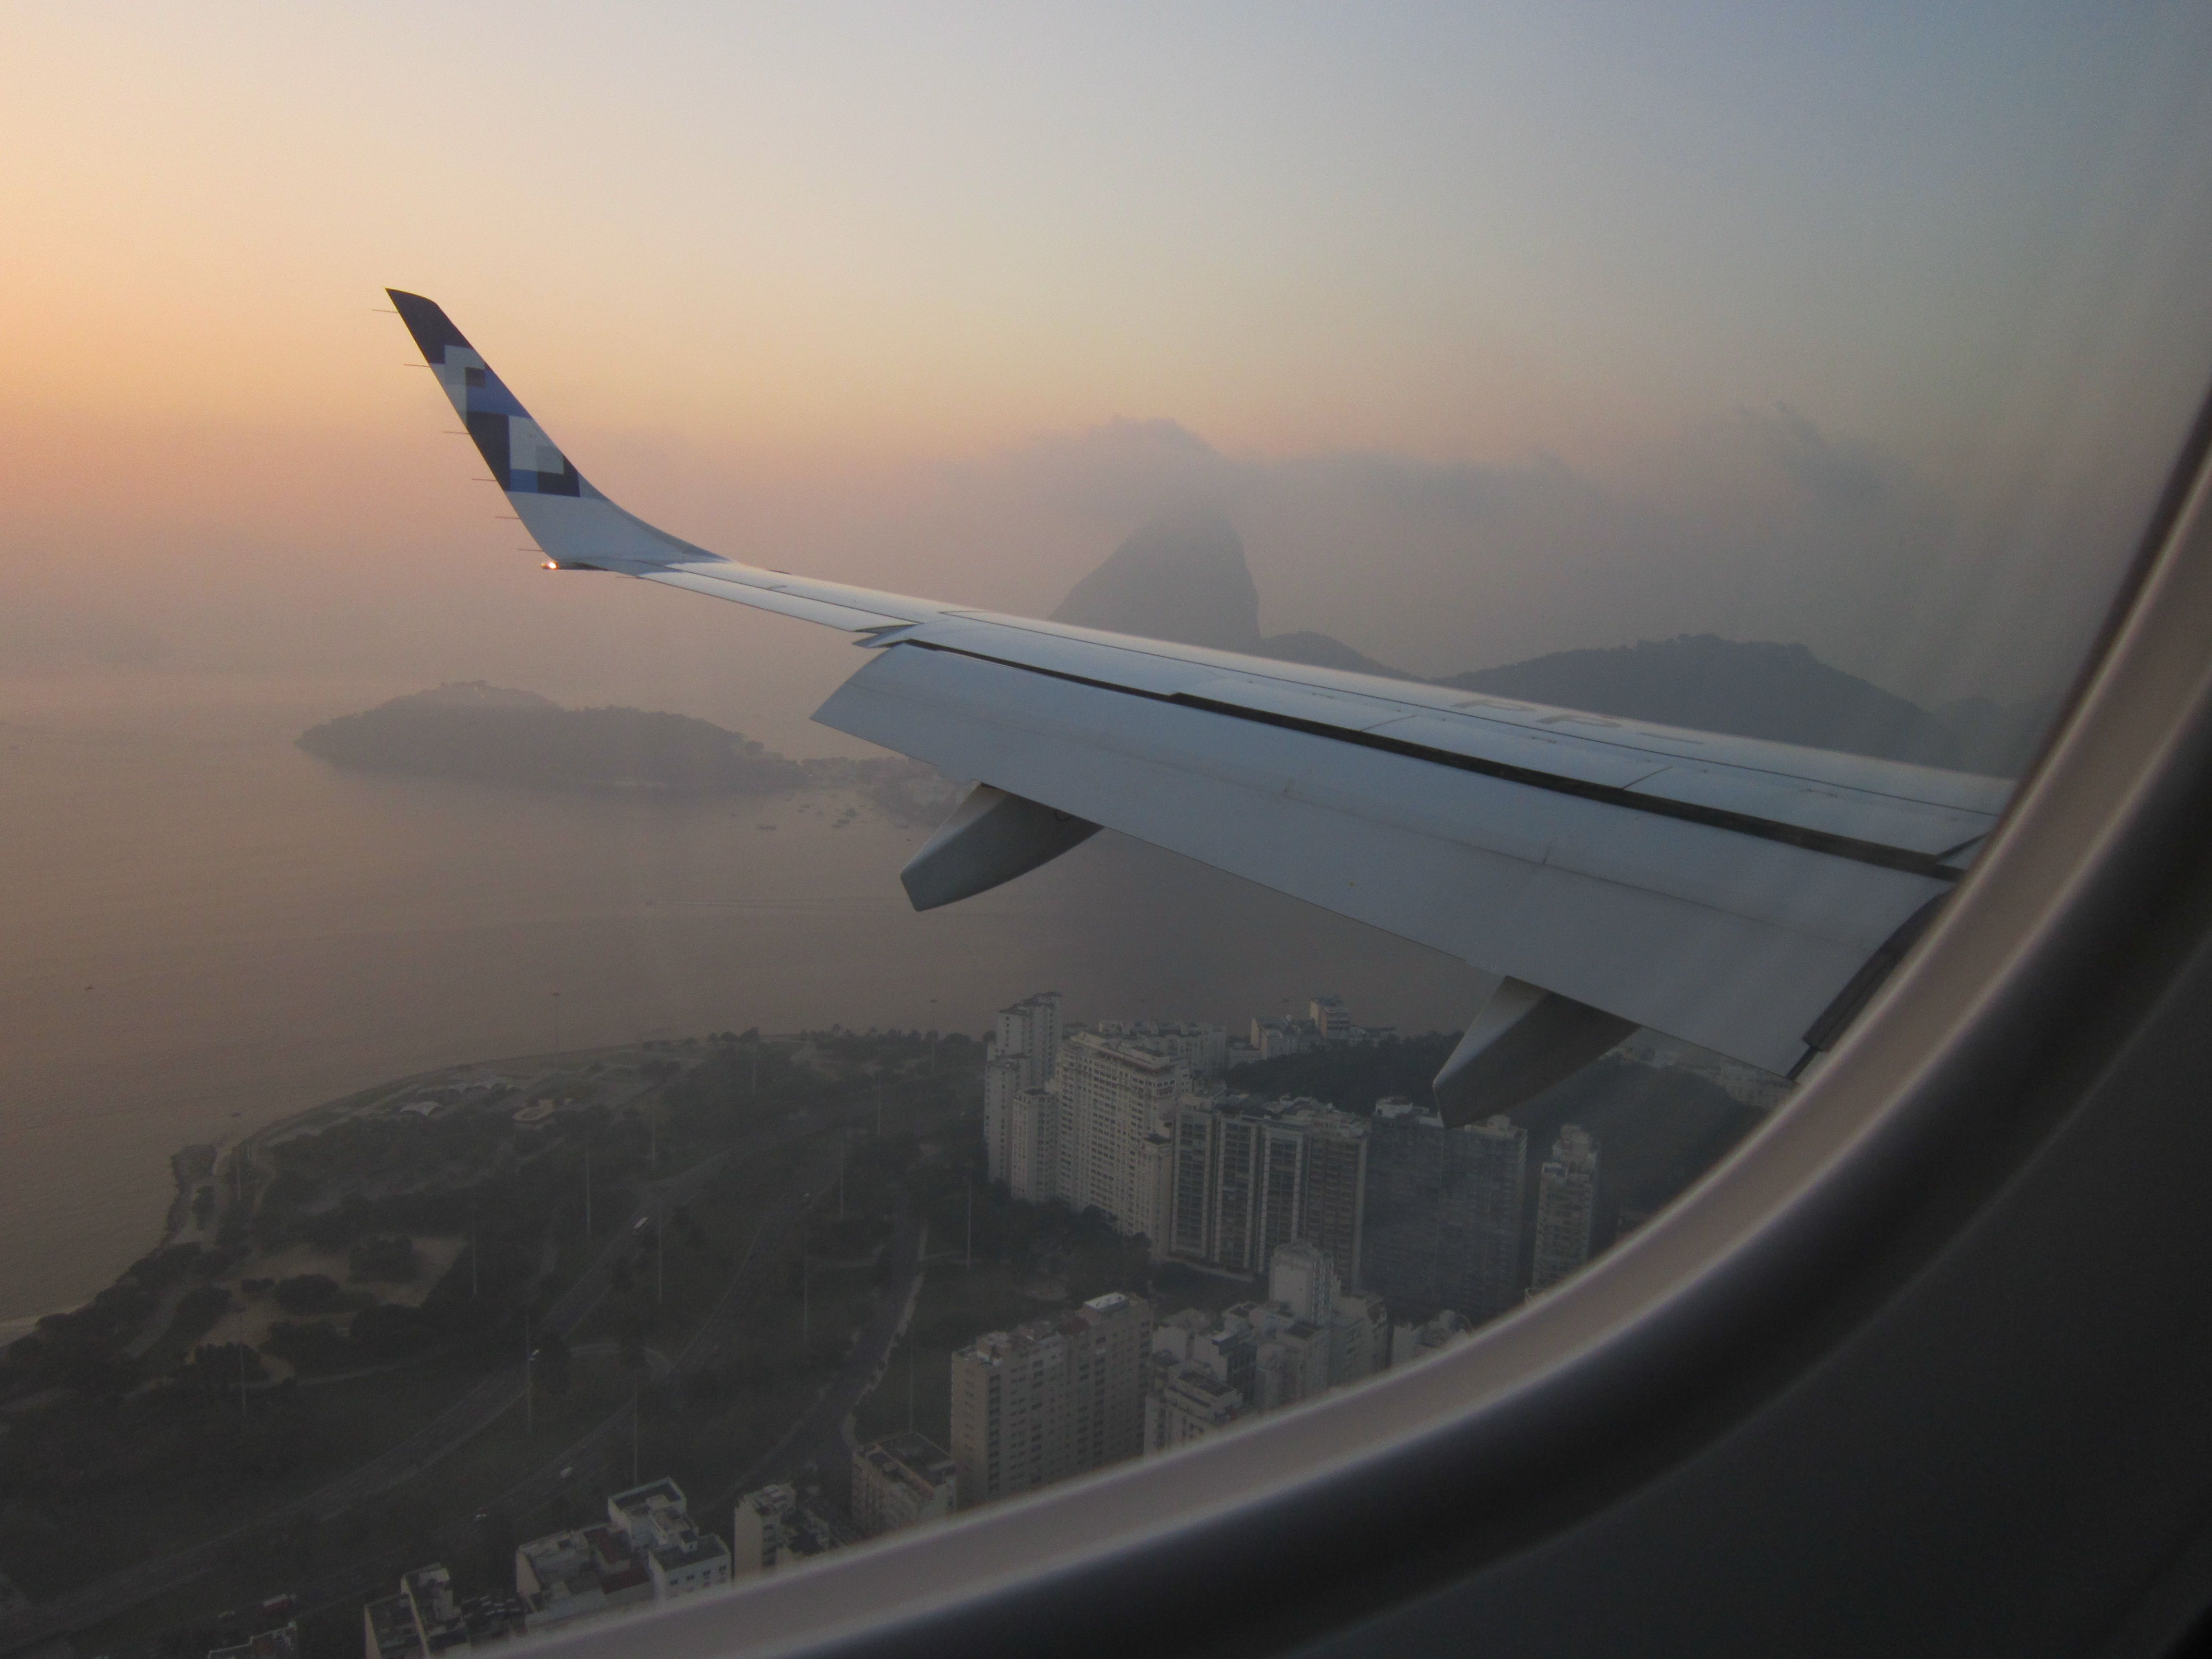 Embraer E175 from Trip Airlines over Rio de Janeiro